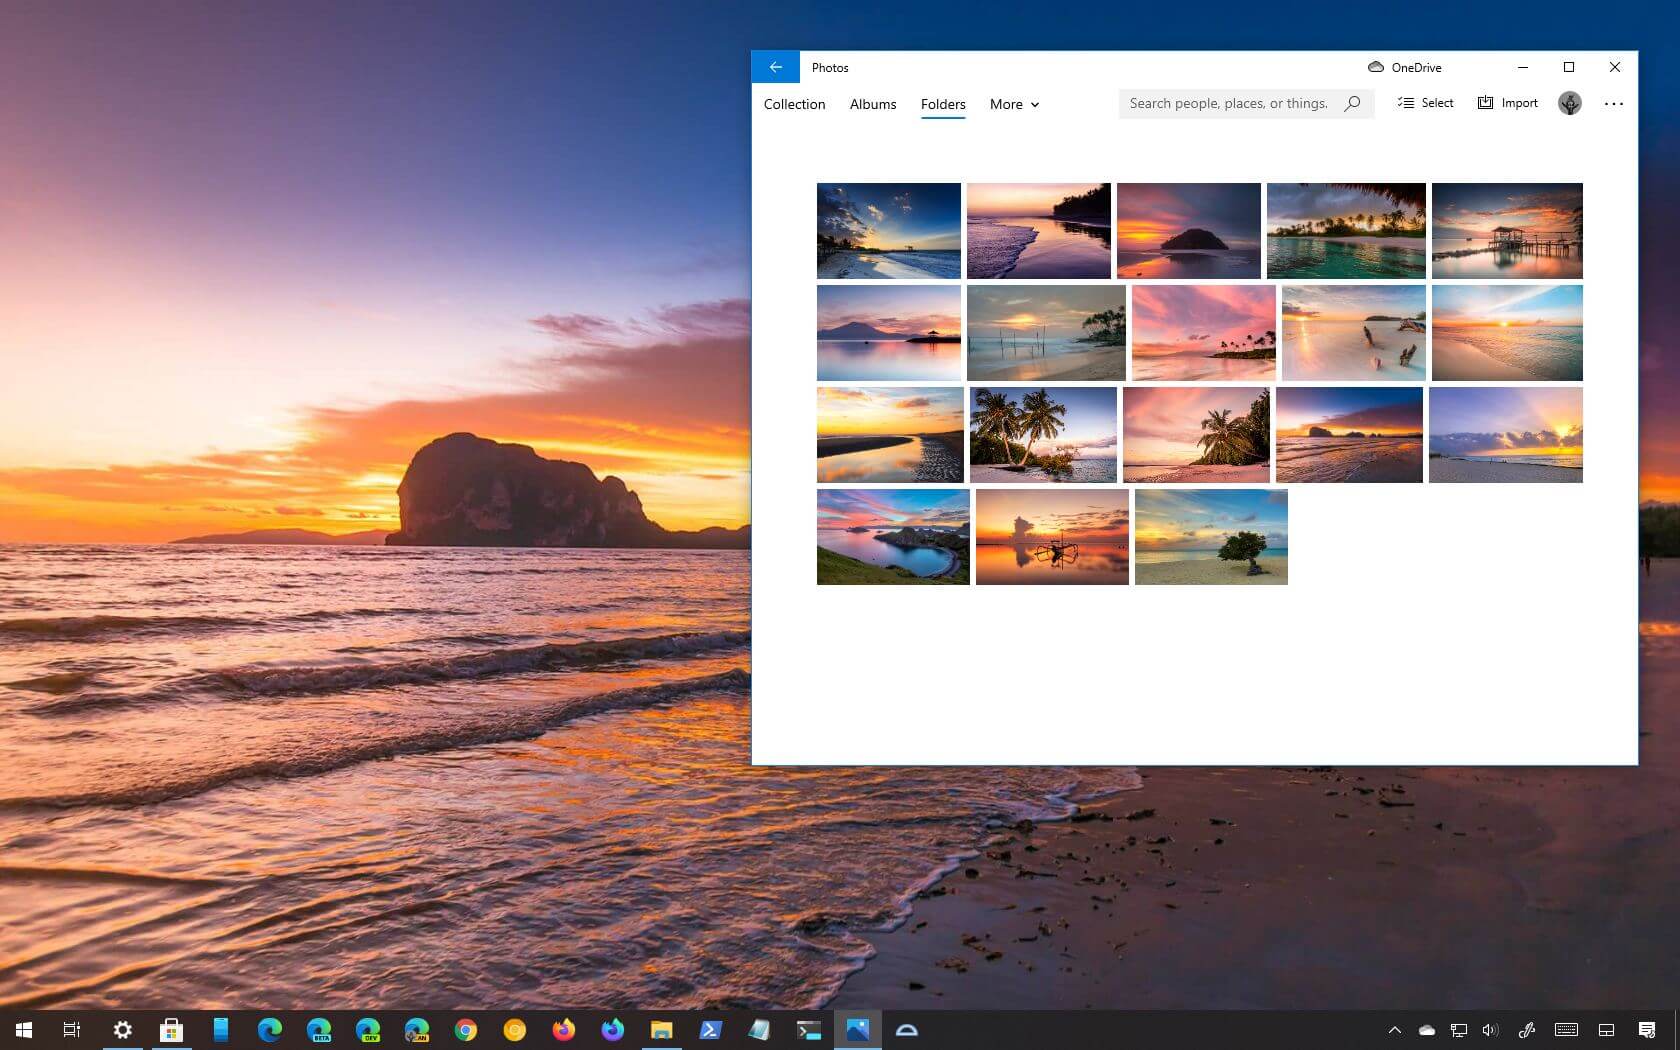 Bạn sẽ không thể cưỡng lại được vẻ đẹp của giao diện đèn sáng trên bãi biển cho Windows 10 trong ảnh! Hãy tải về và trải nghiệm ngay để thấy rõ sự khác biệt so với giao diện mặc định.